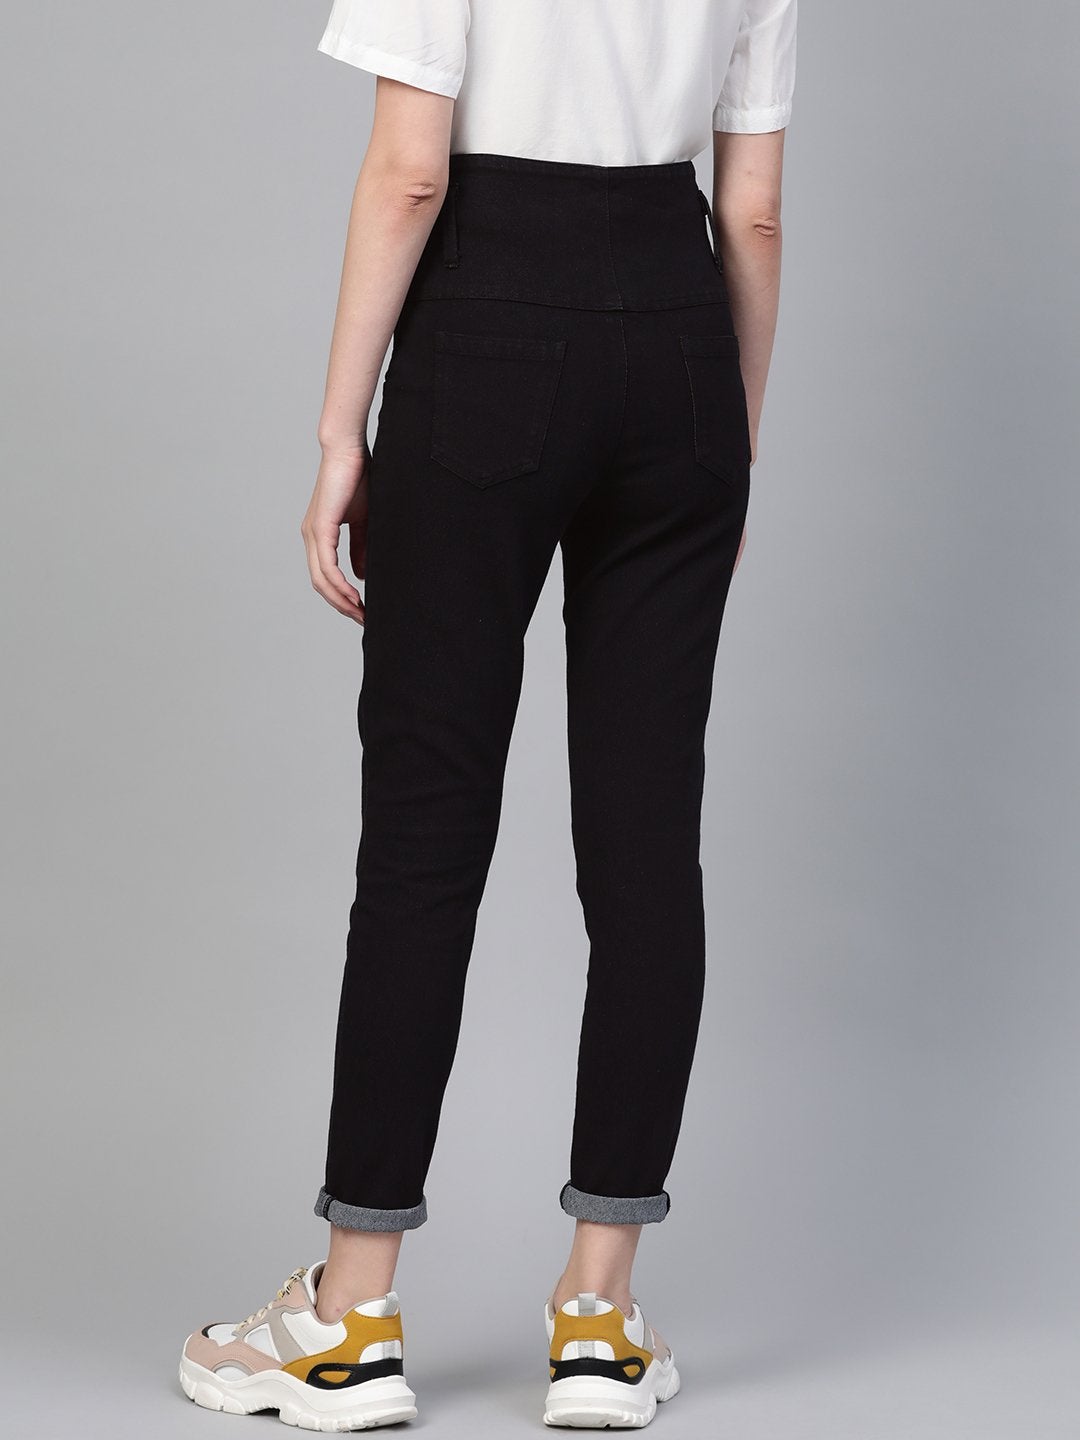 Women's Black Metal Button High Waist Jeans - SASSAFRAS